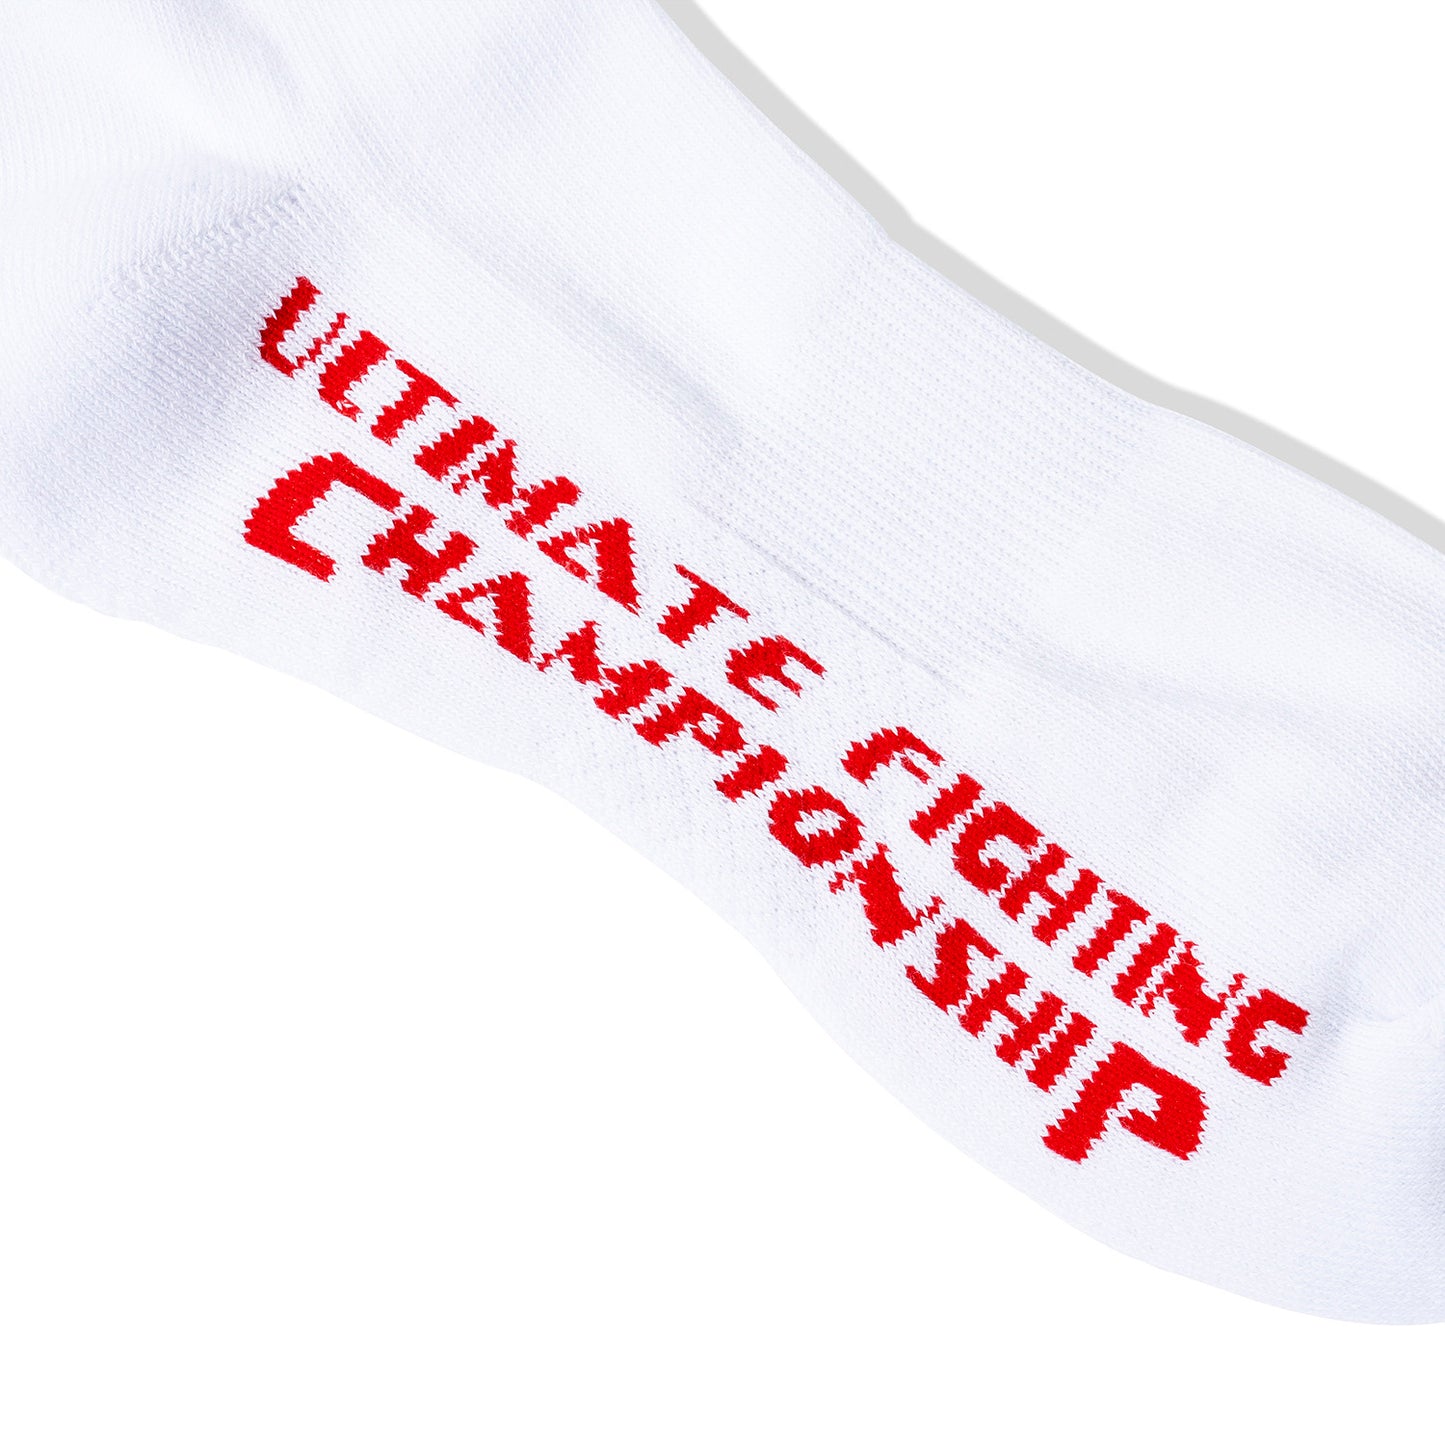 ASSC x UFC Footwork Socks - White